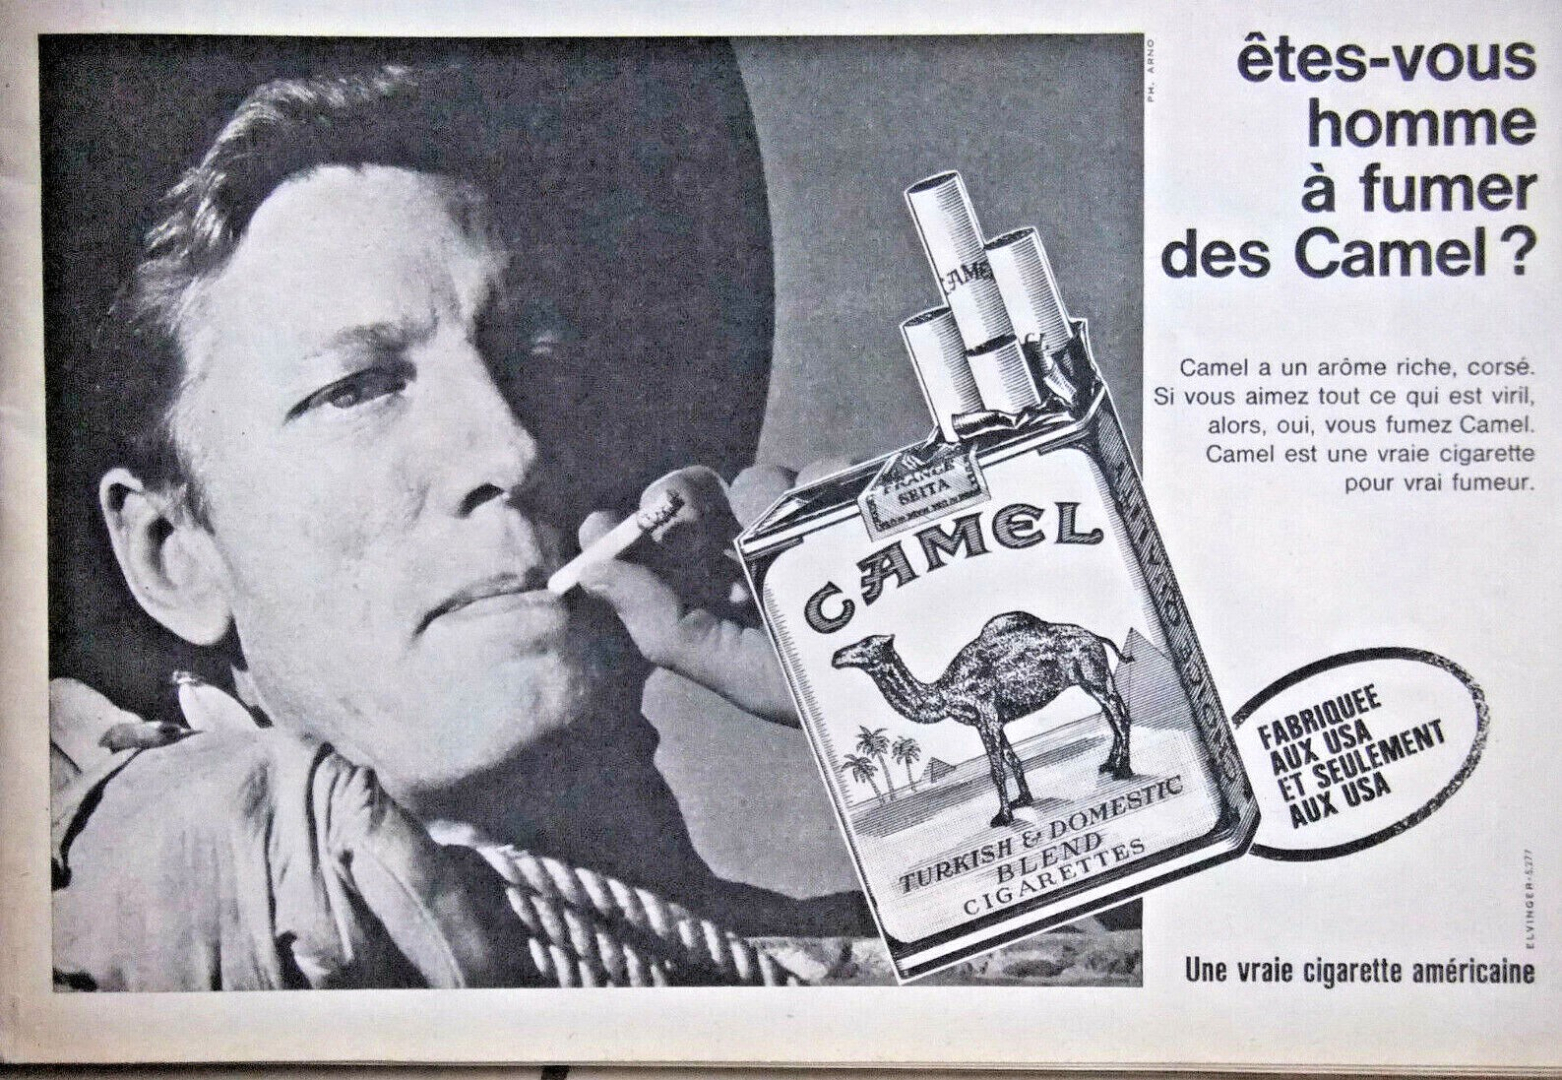 Visuel publicitaire de la marque de cigarette Camel, vantant la virilité des fumeurs